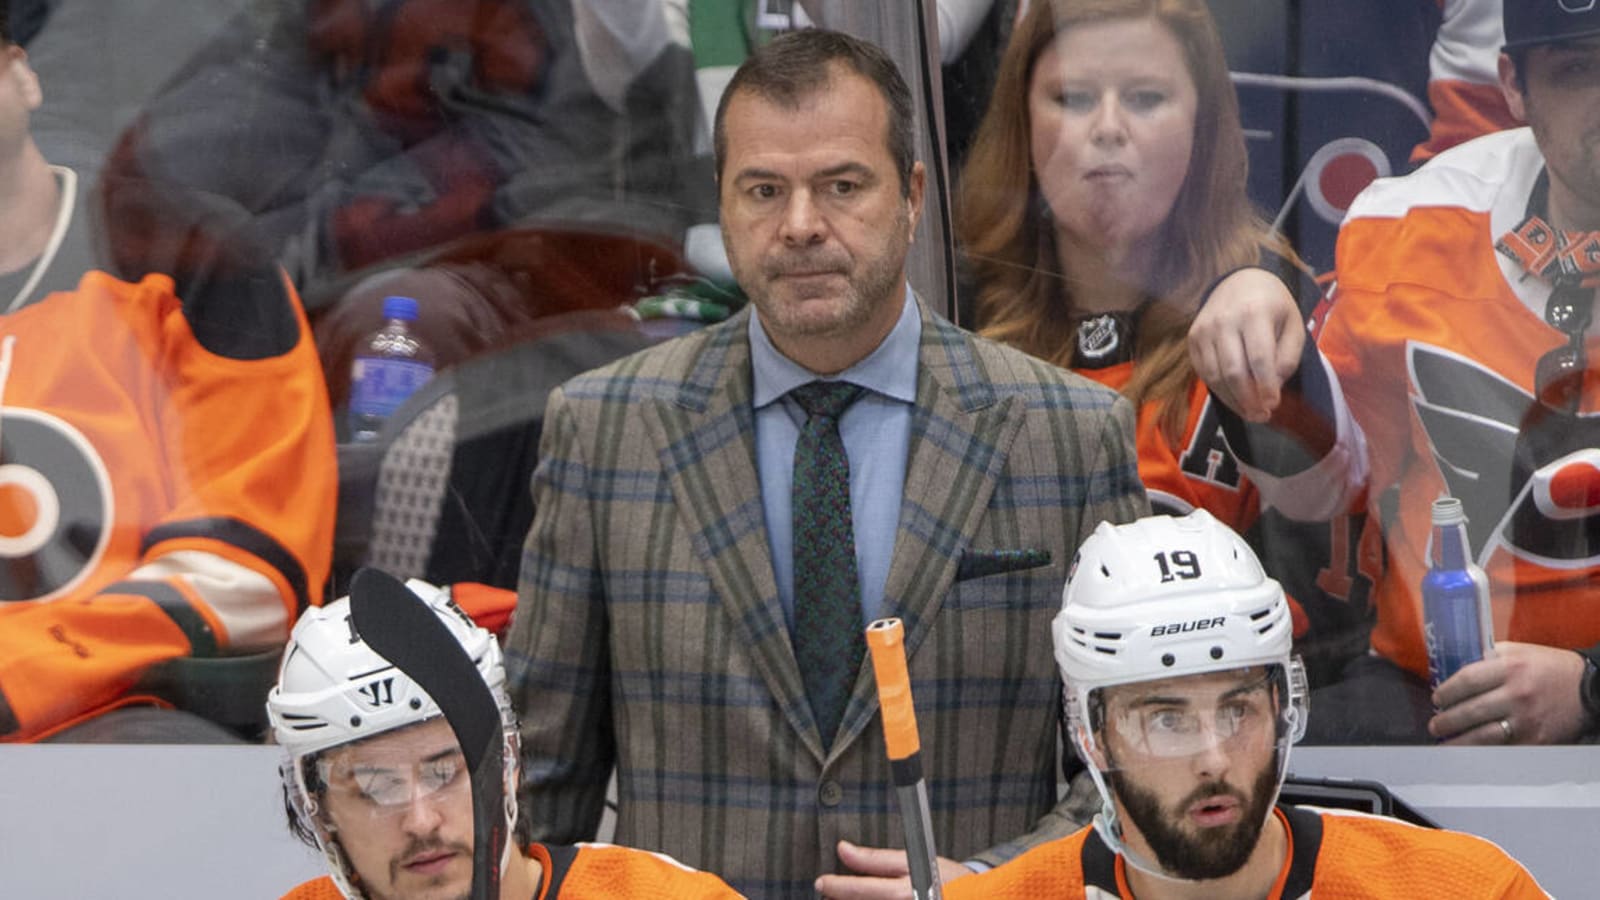 Former Flyers head coach announces retirement